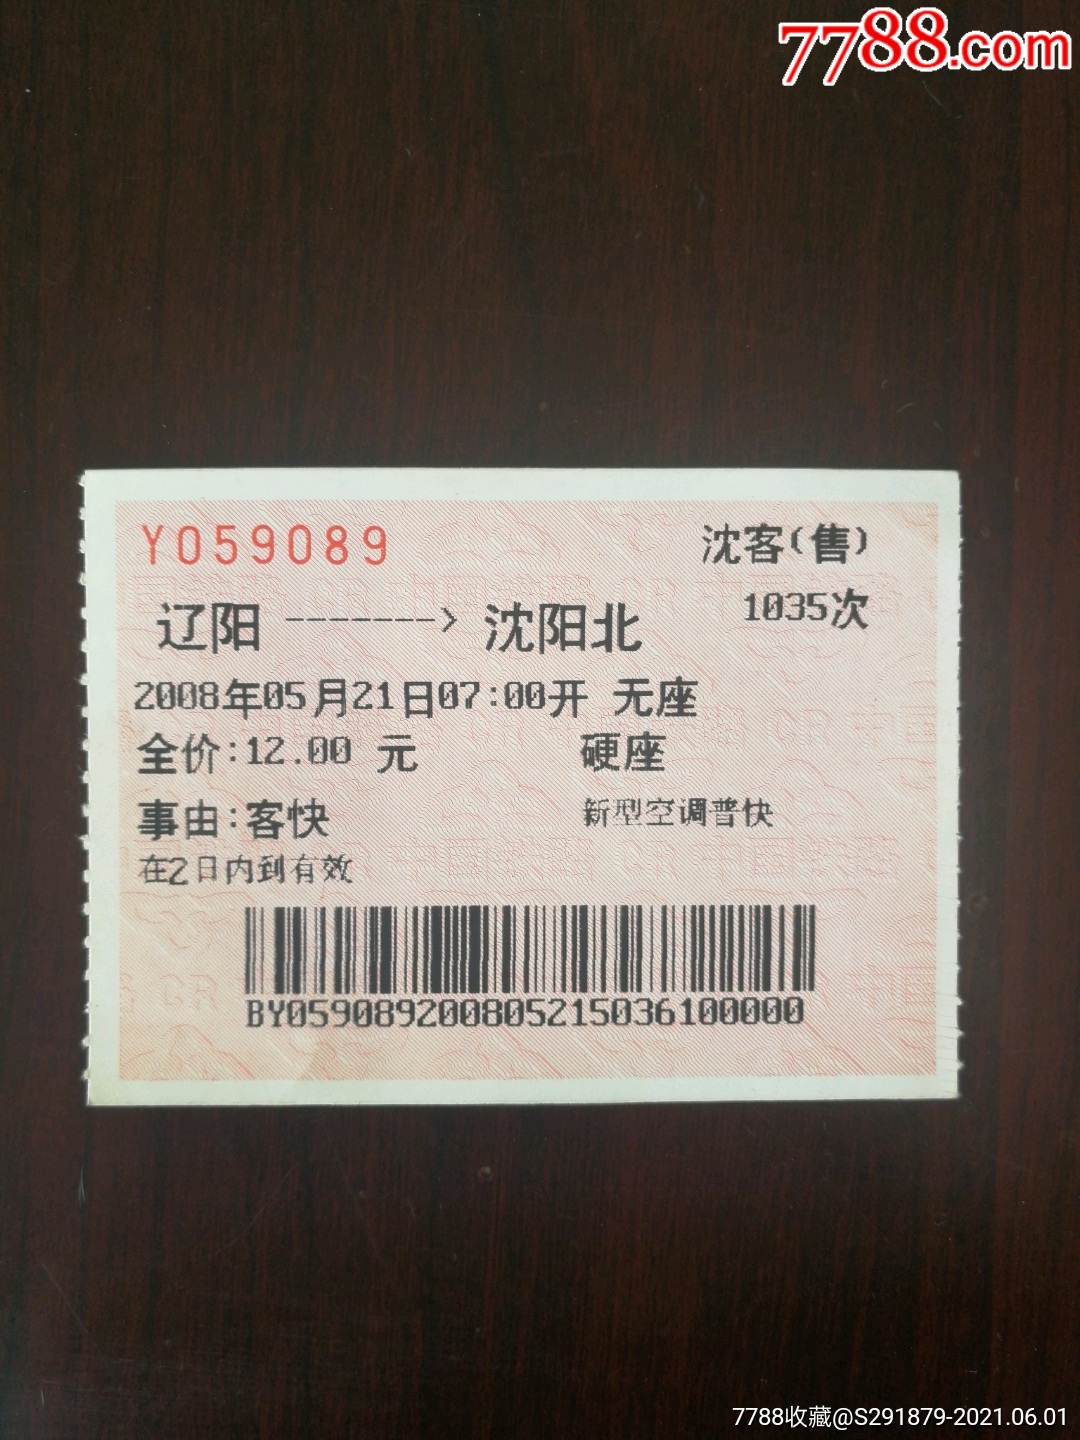 火车票:辽阳—沈阳，6301次，2007年_火车票_作品图片_收藏价格_7788纸艺